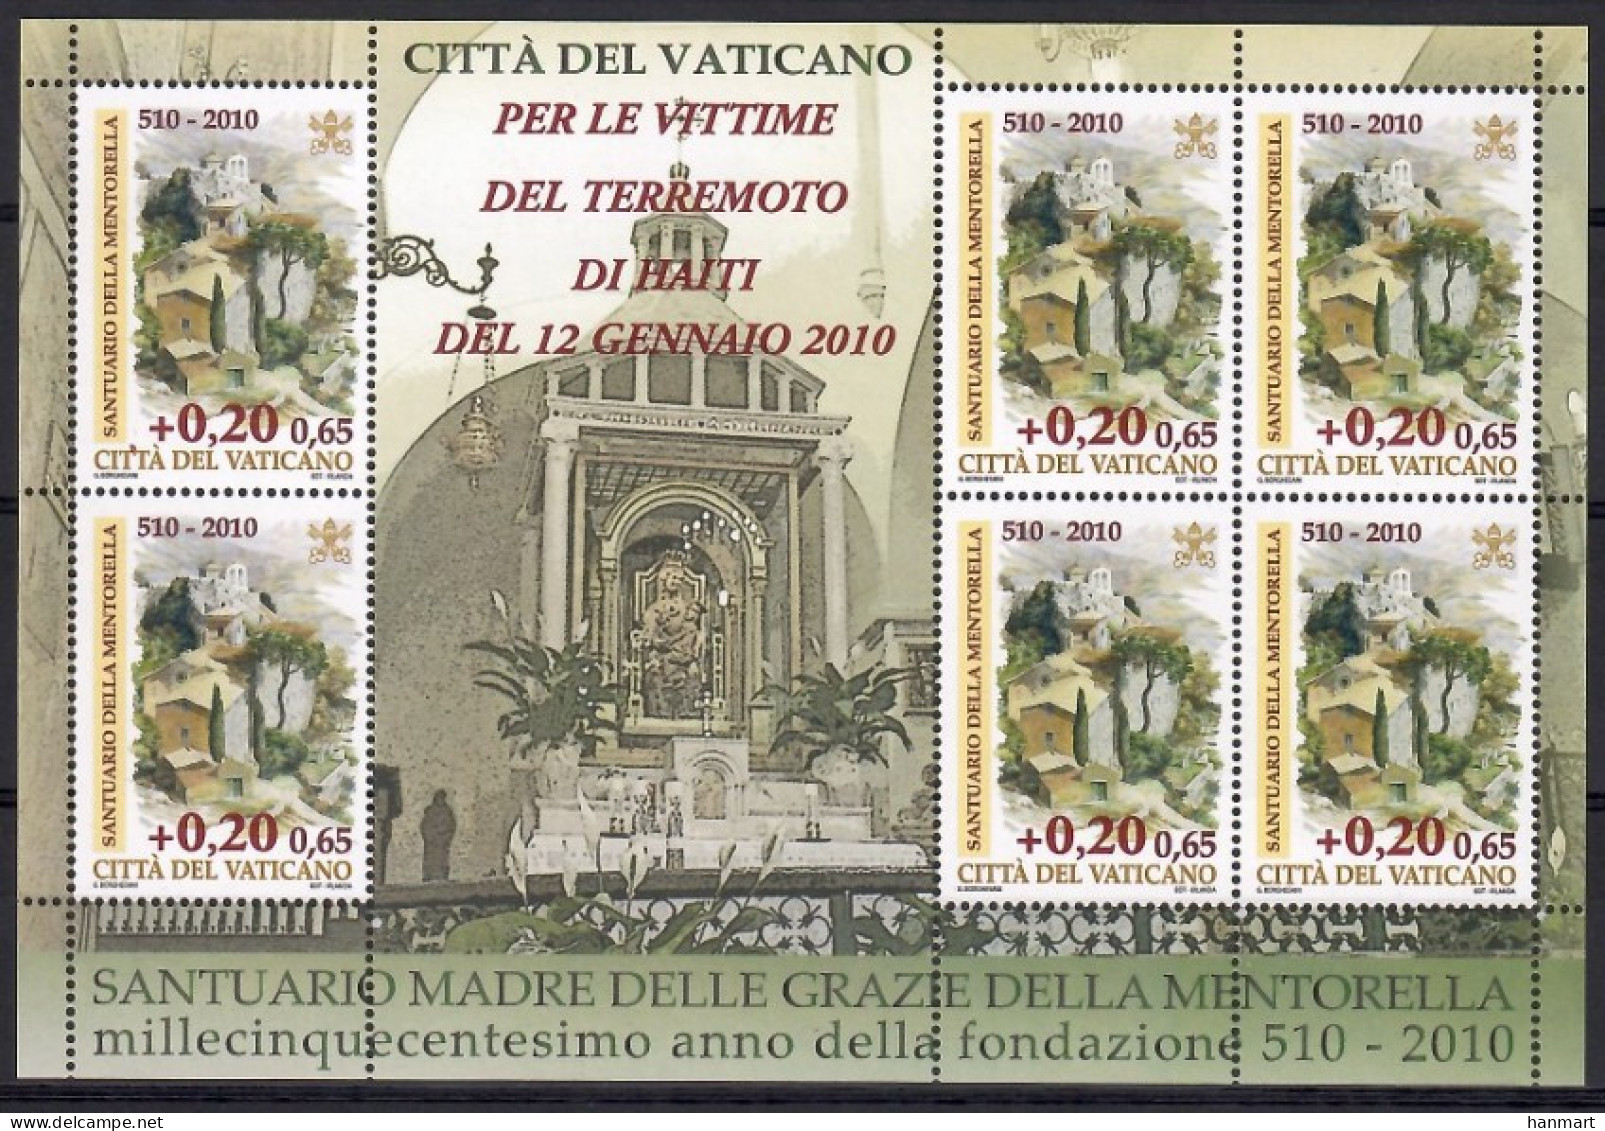 Vatican City 2010 Mi Sheet 1664 MNH  (ZE2 VTCark1664) - Christentum